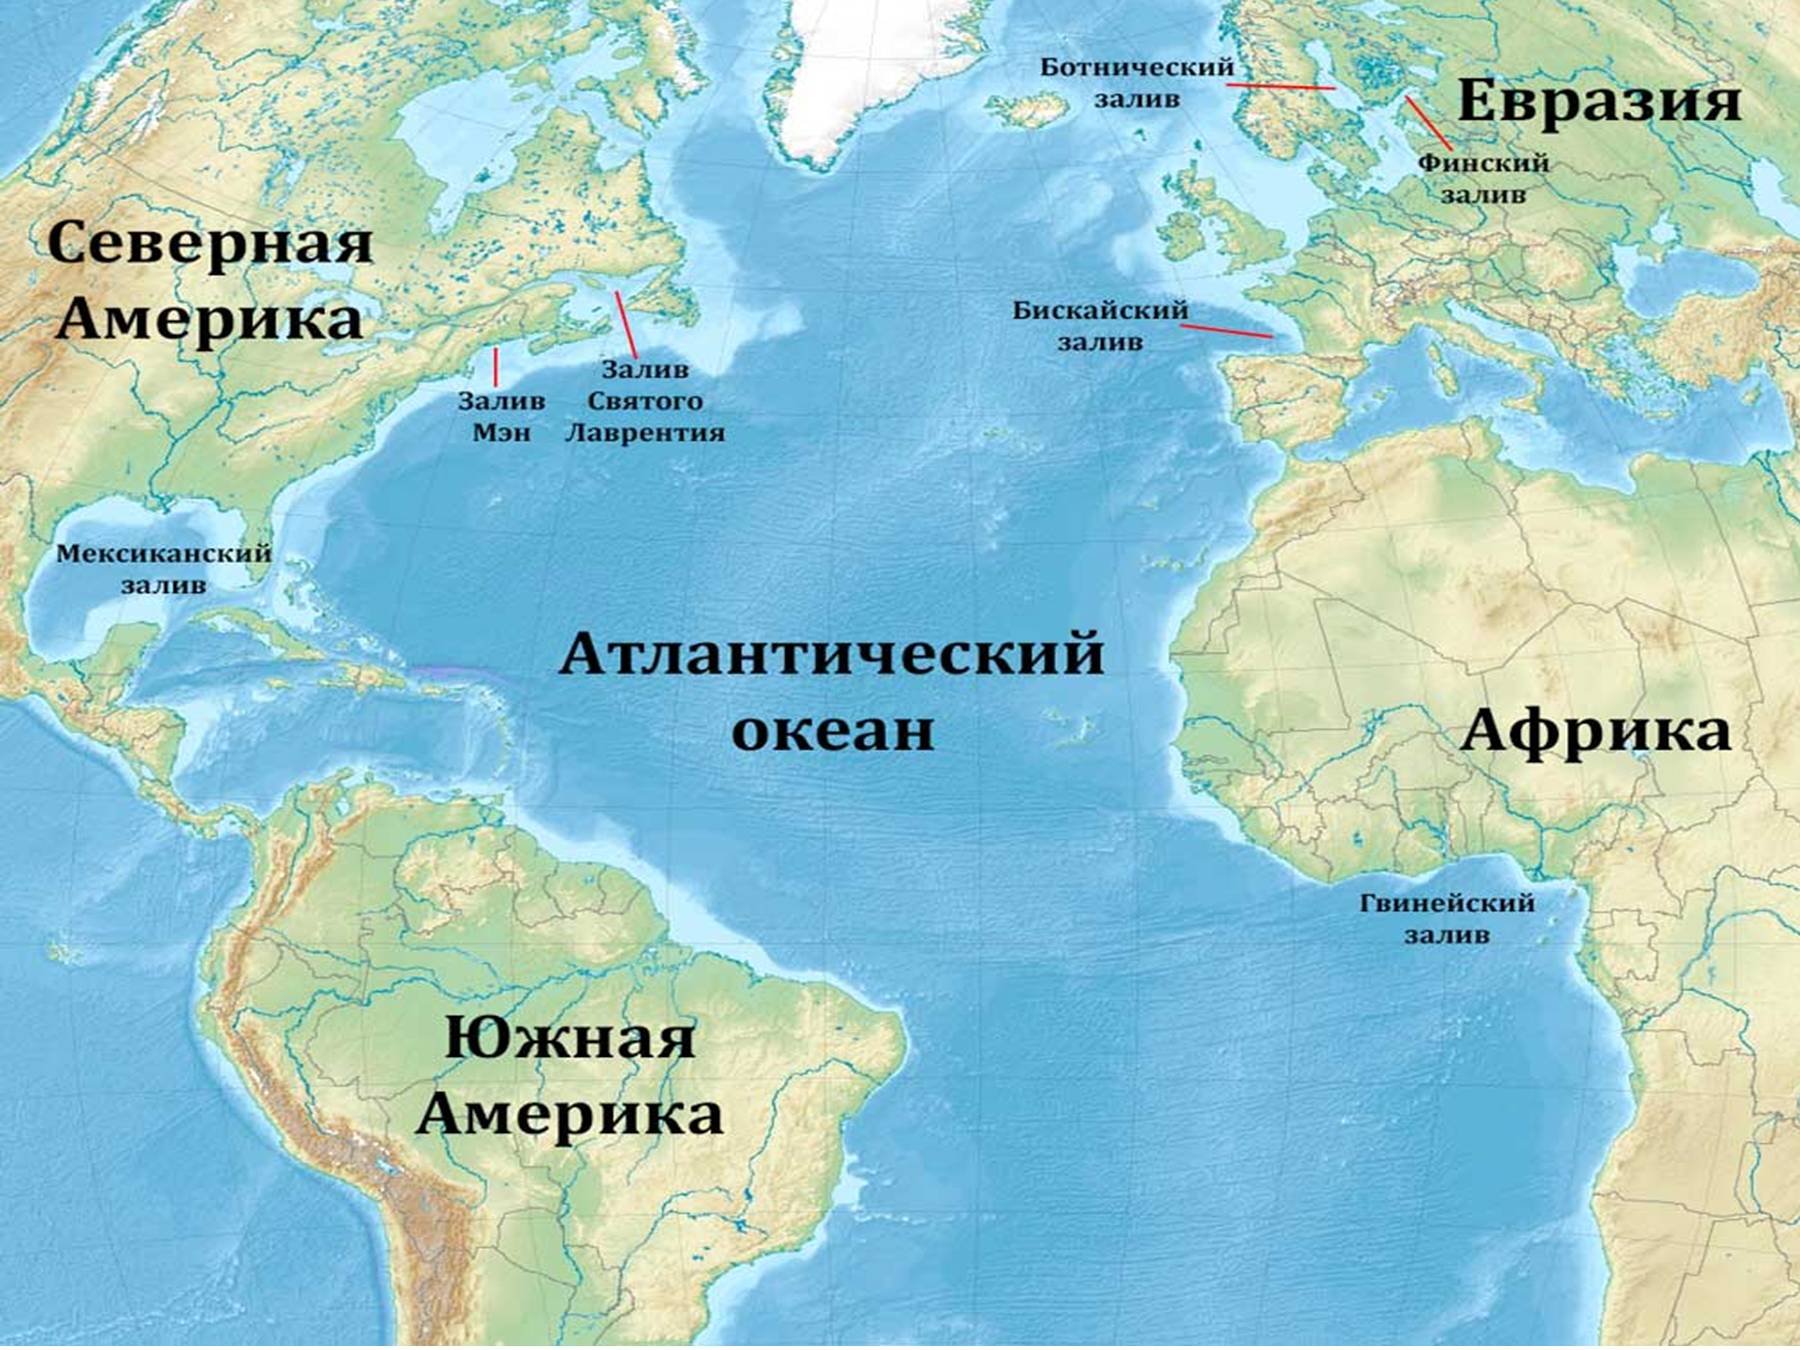 Европа омывается океанами. Расположение Атлантического океана на карте. Карта Атлантического океана с морями заливами и проливами. Атлантический океан на карте. Атлантический акеан на карте.